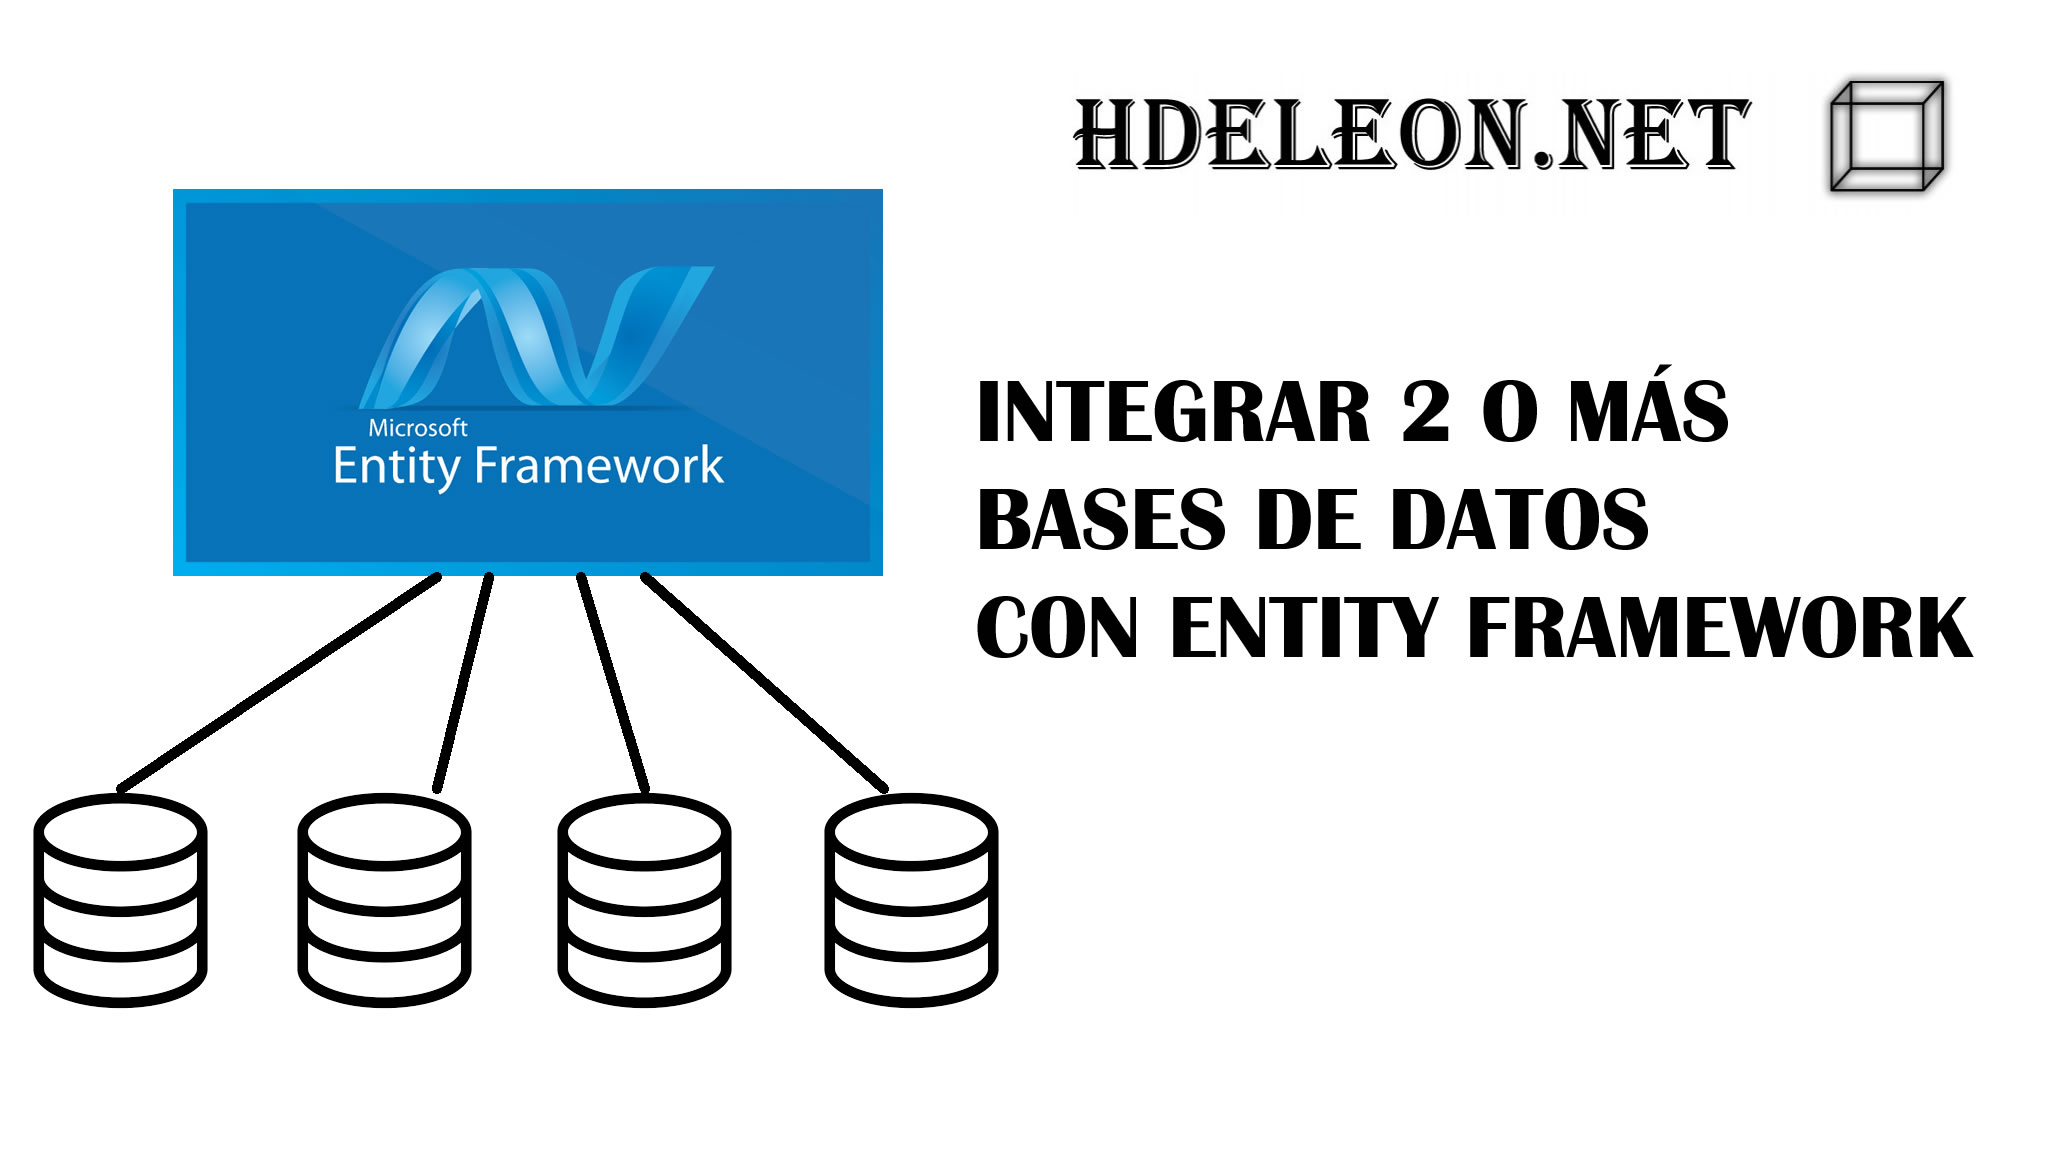 ¿Cómo utilizar Entity Framework con 2 o más bases de datos distintas?, C# .Net Visual Studio